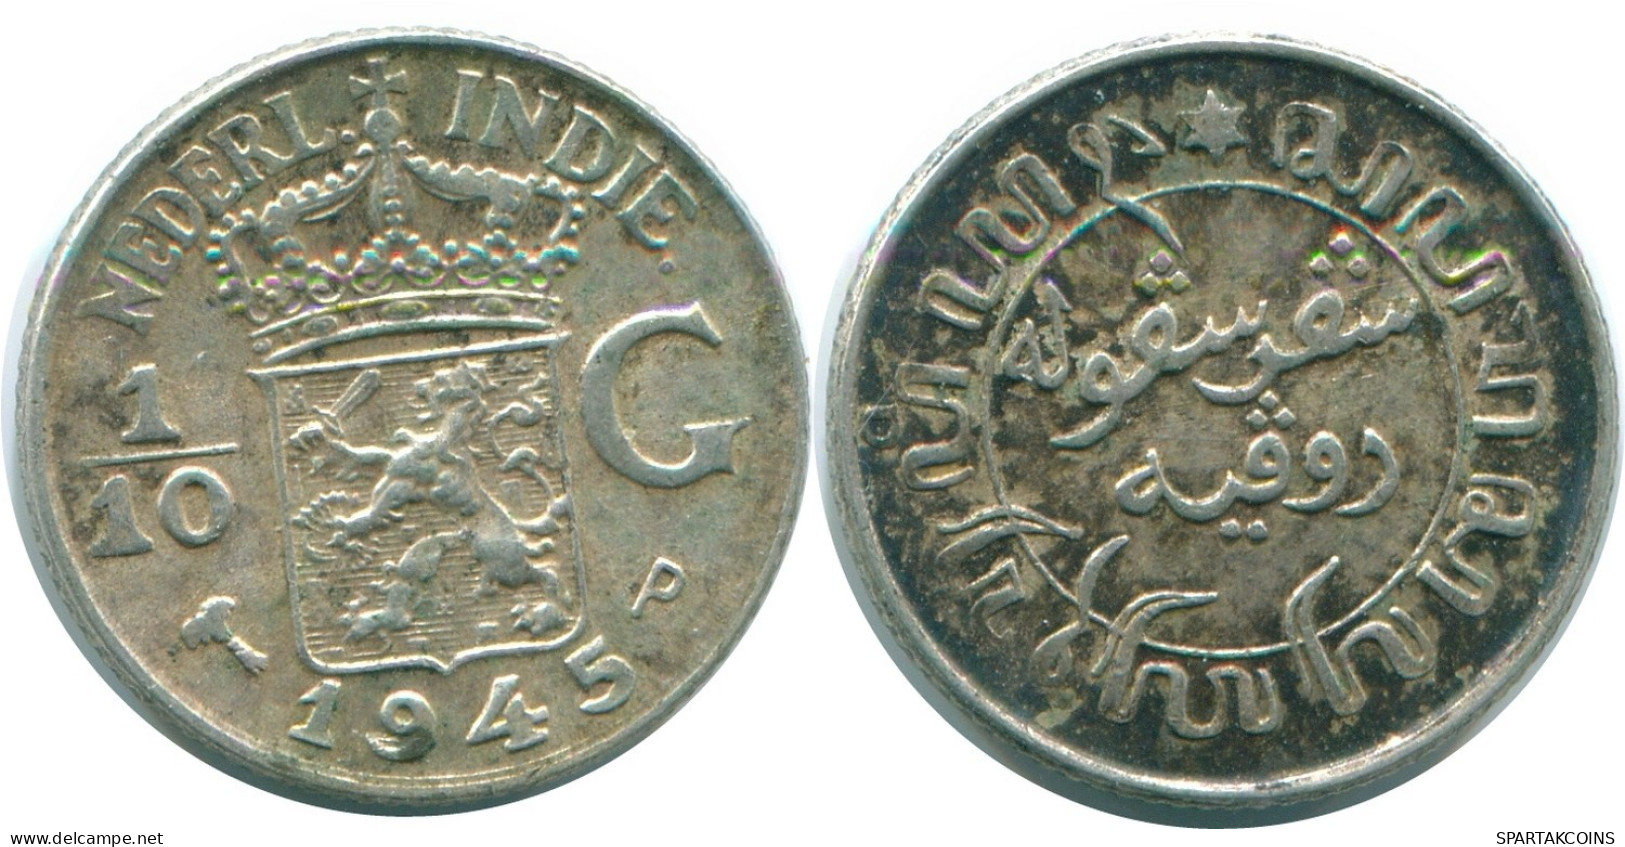 1/10 GULDEN 1945 P NETHERLANDS EAST INDIES SILVER Colonial Coin #NL14132.3.U.A - Niederländisch-Indien